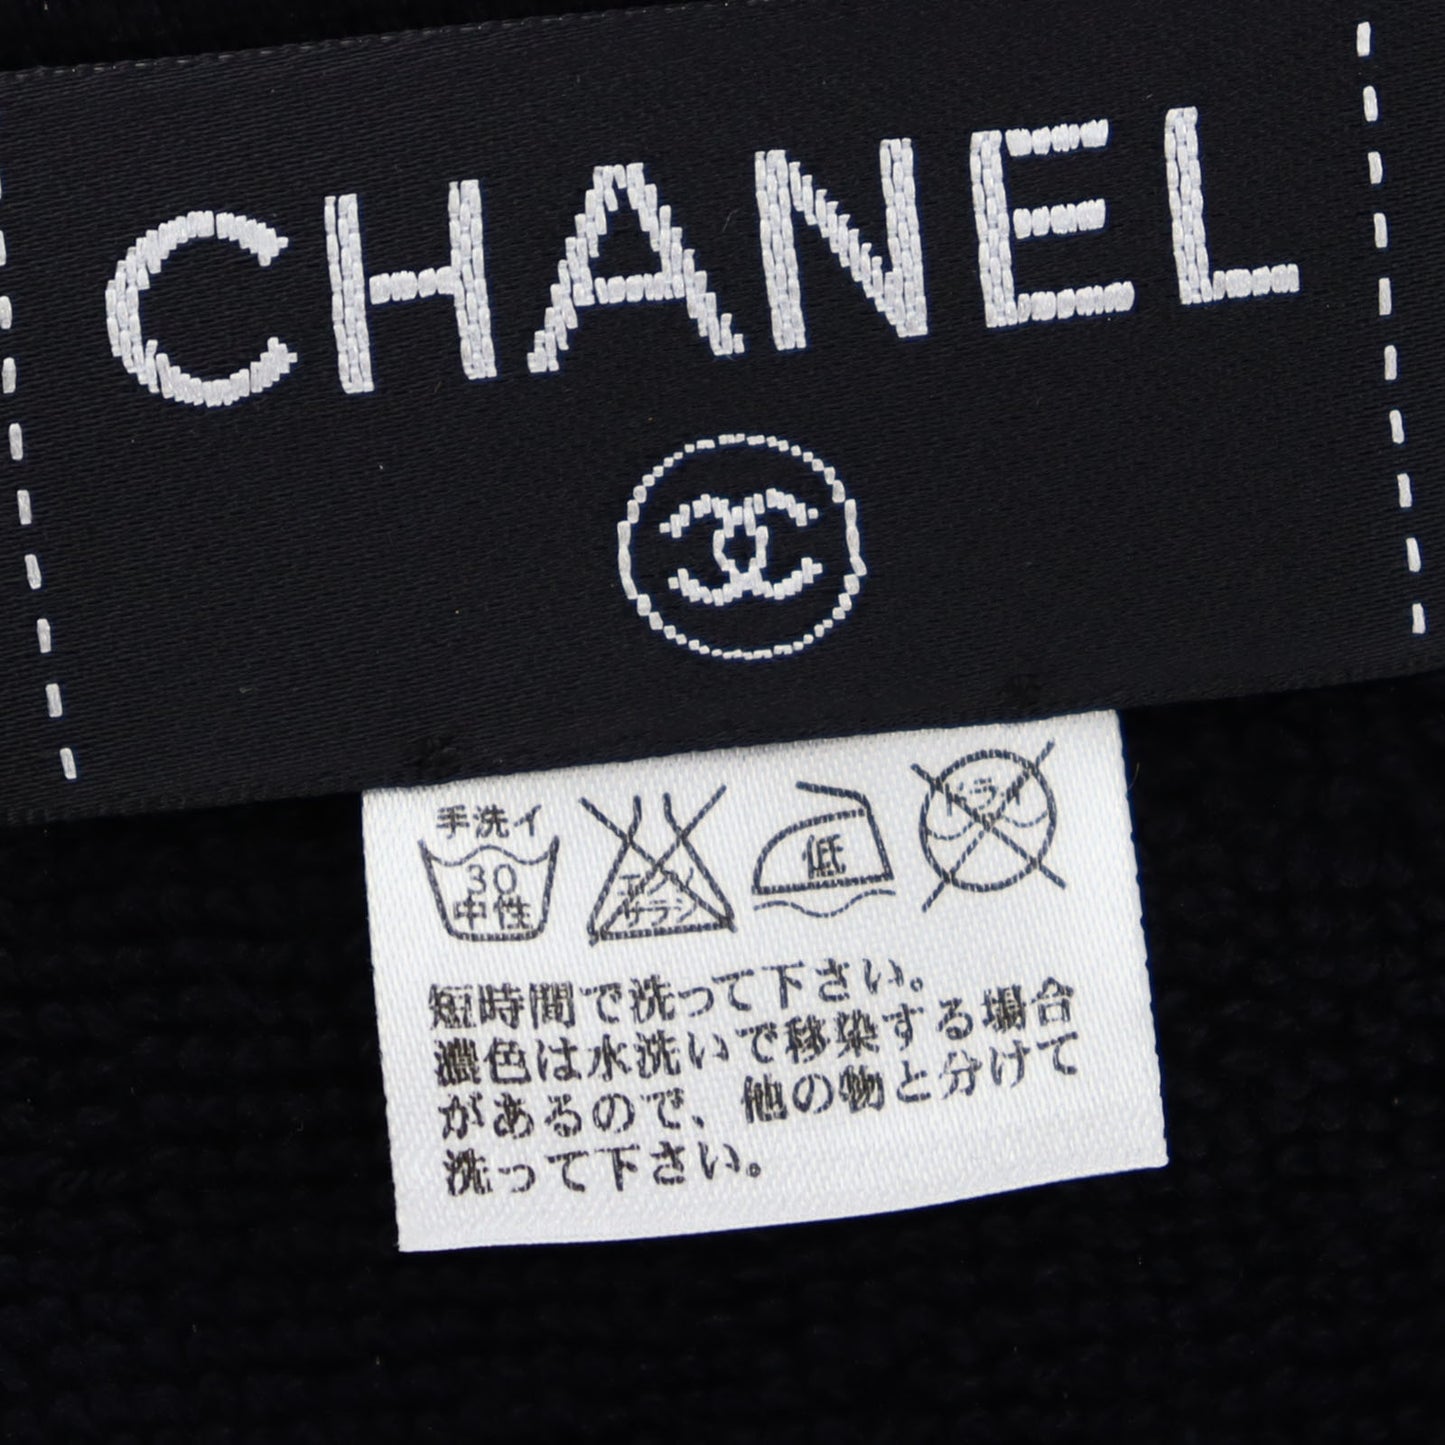 CHANEL CC Logos Large Beach Towel 100% Cotton Pile Black #BX905